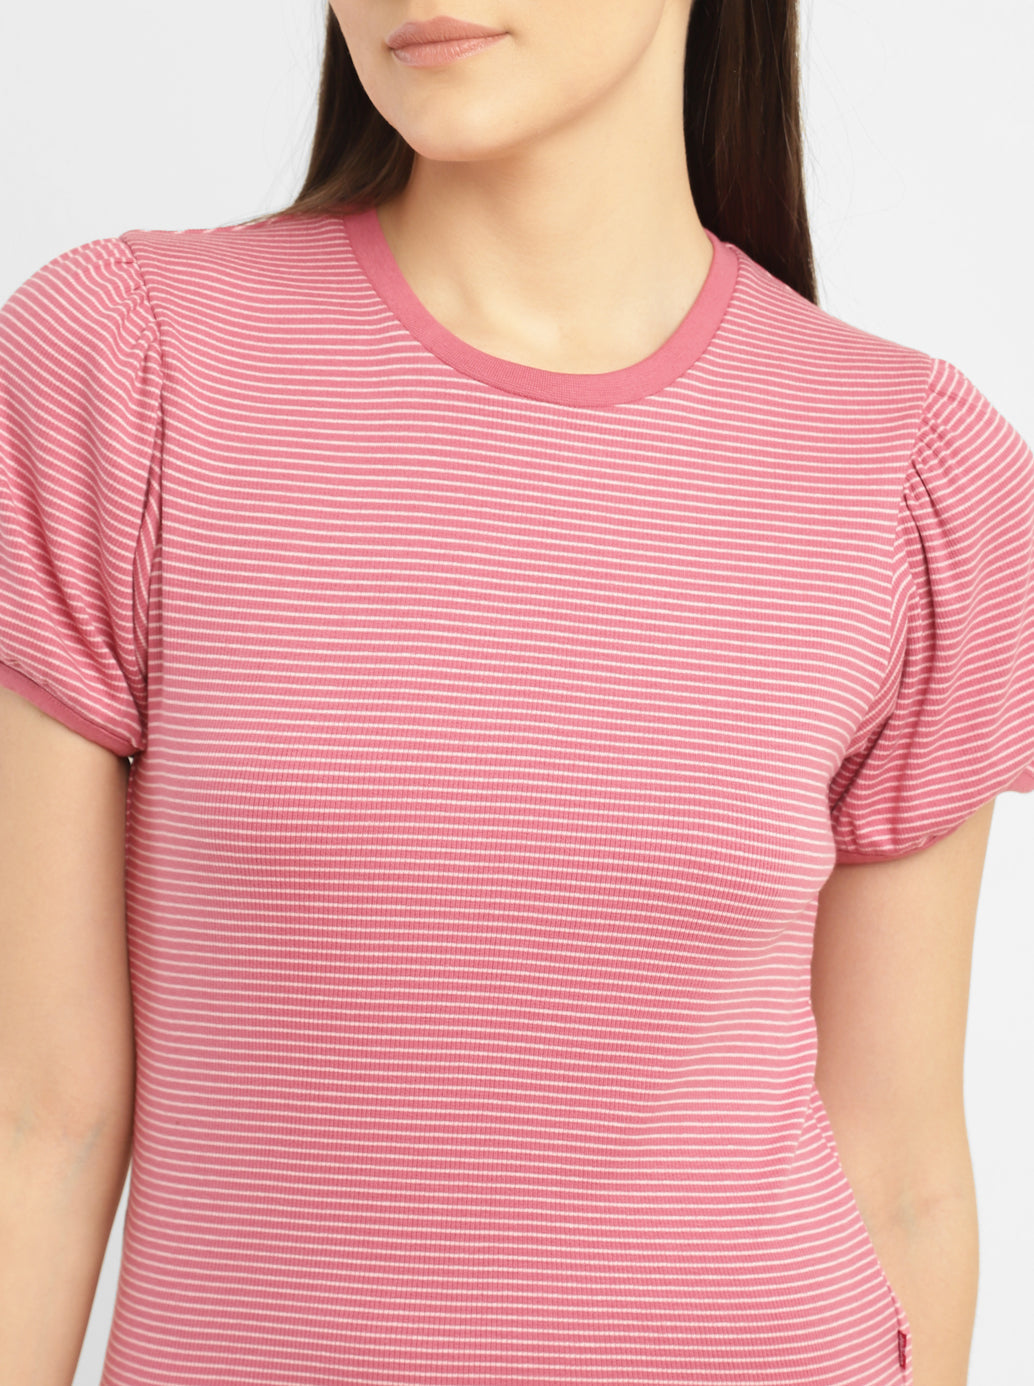 Women's Striped Pink Round Neck Tops